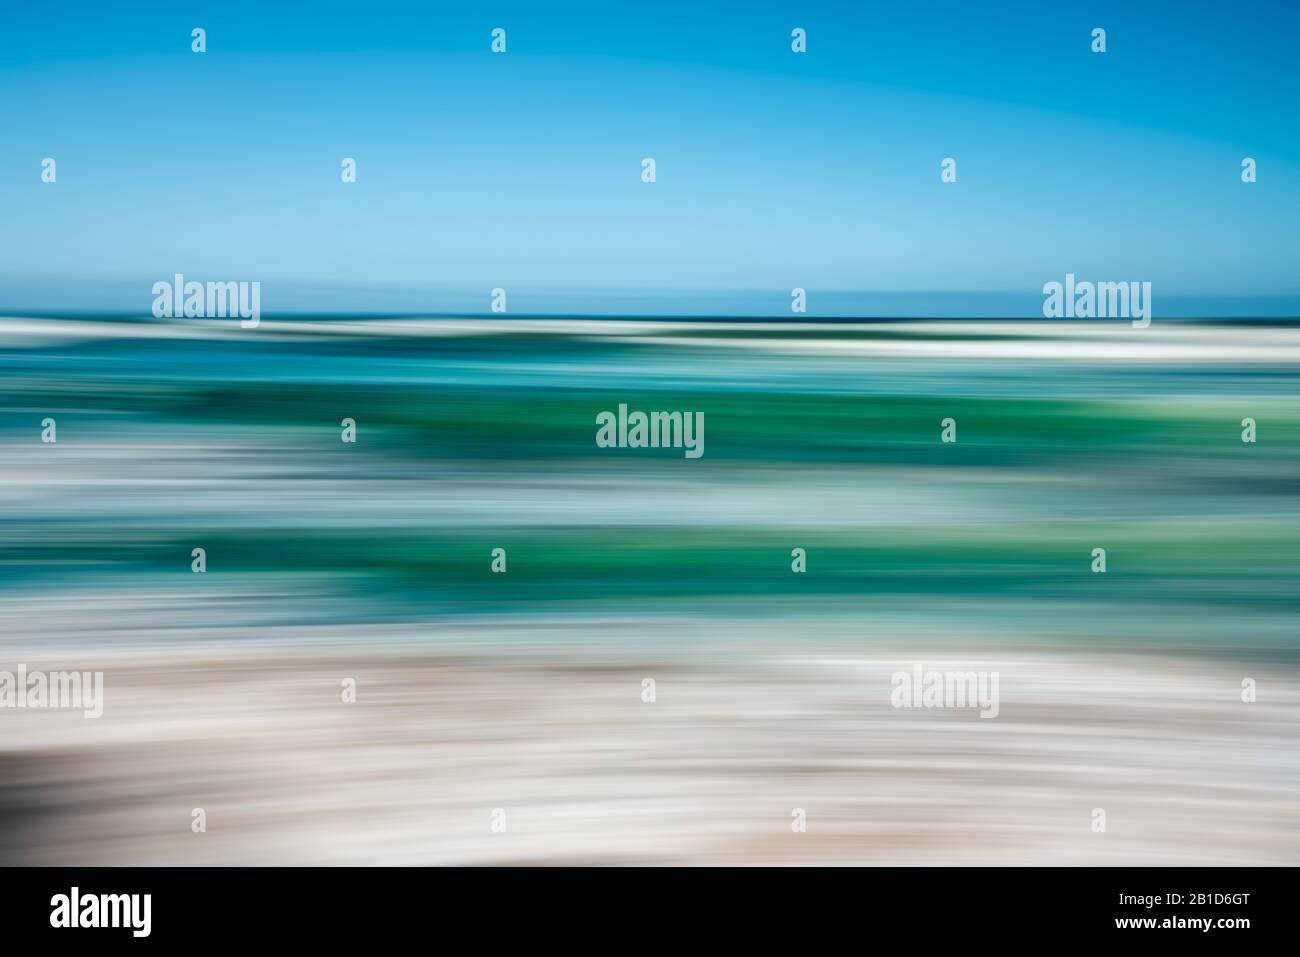 Paysage marin abstrait avec mouvement panoramique flou. L'image affiche un jeu de couleurs bleu et turquoise clair dans un ton divisé. Banque D'Images